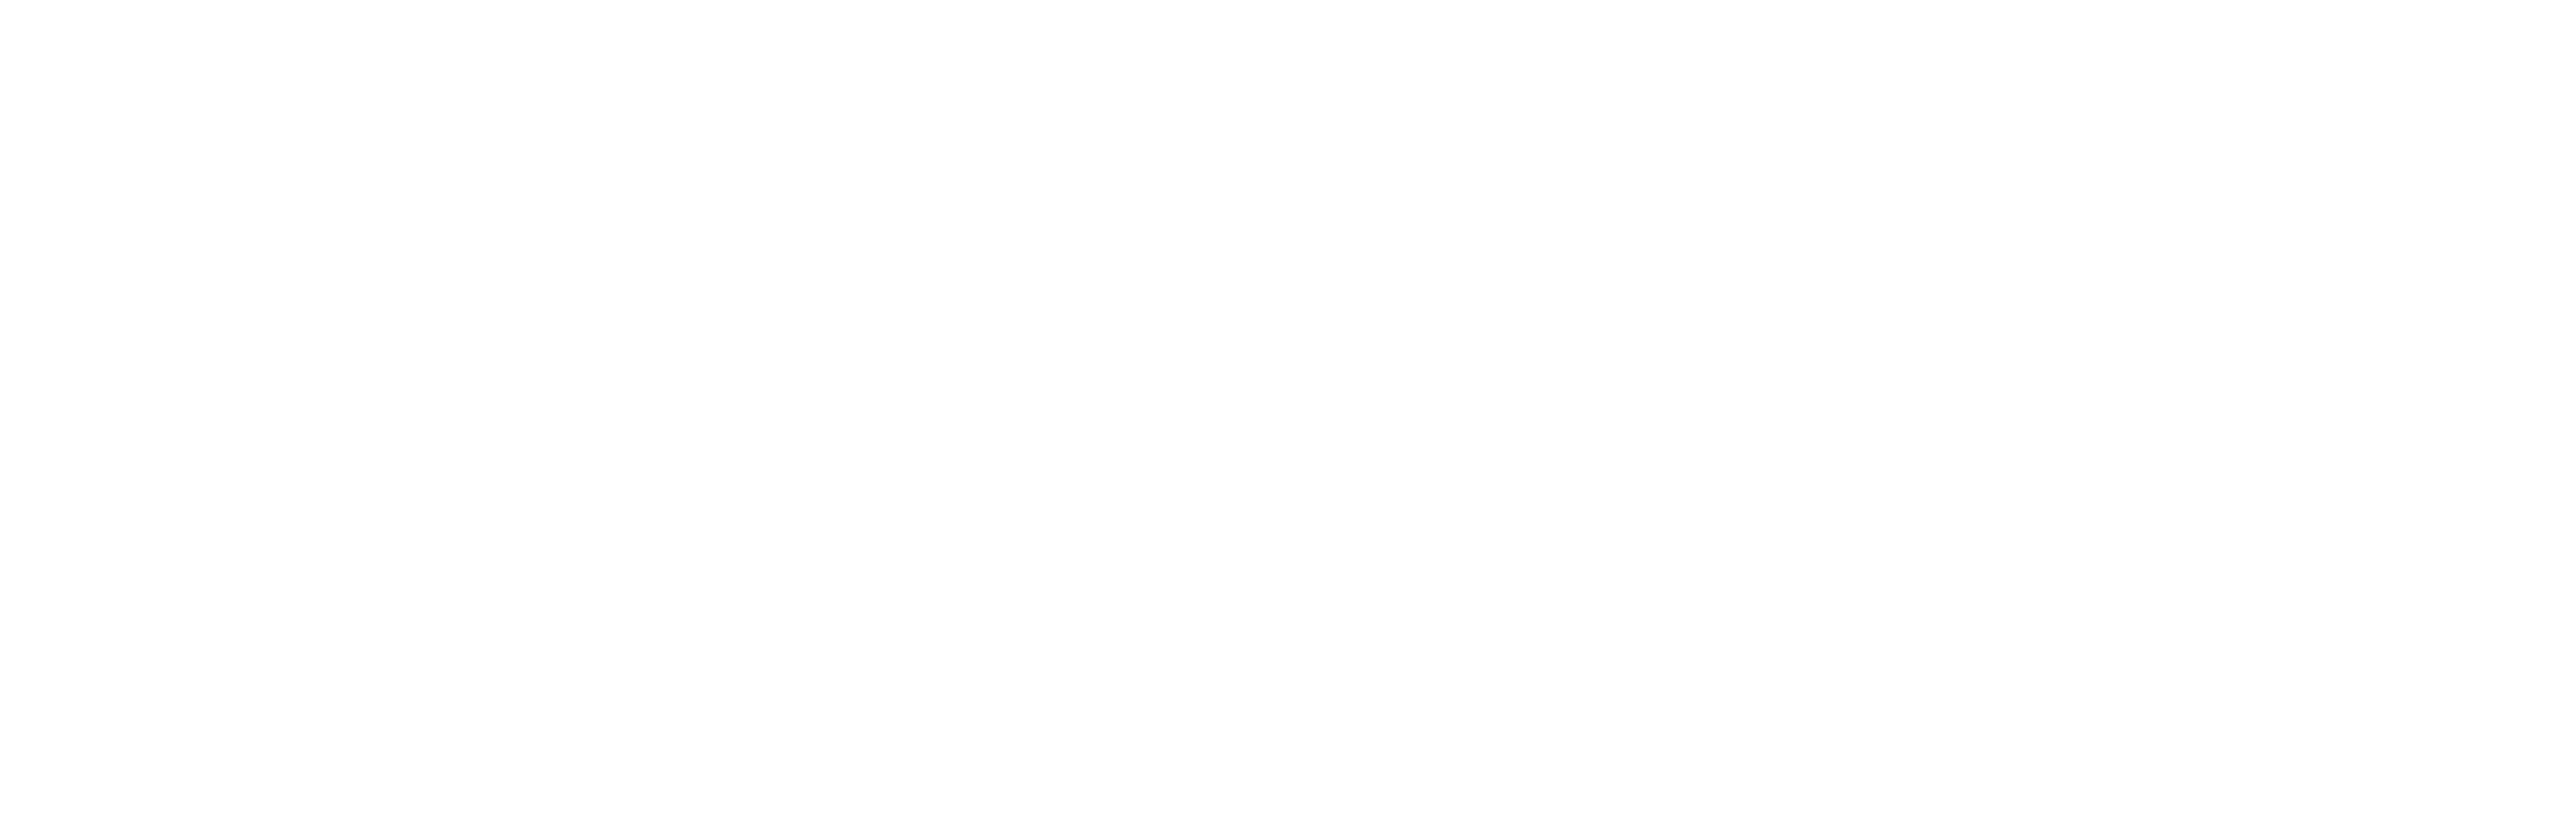 JFK: Destiny Betrayed logo